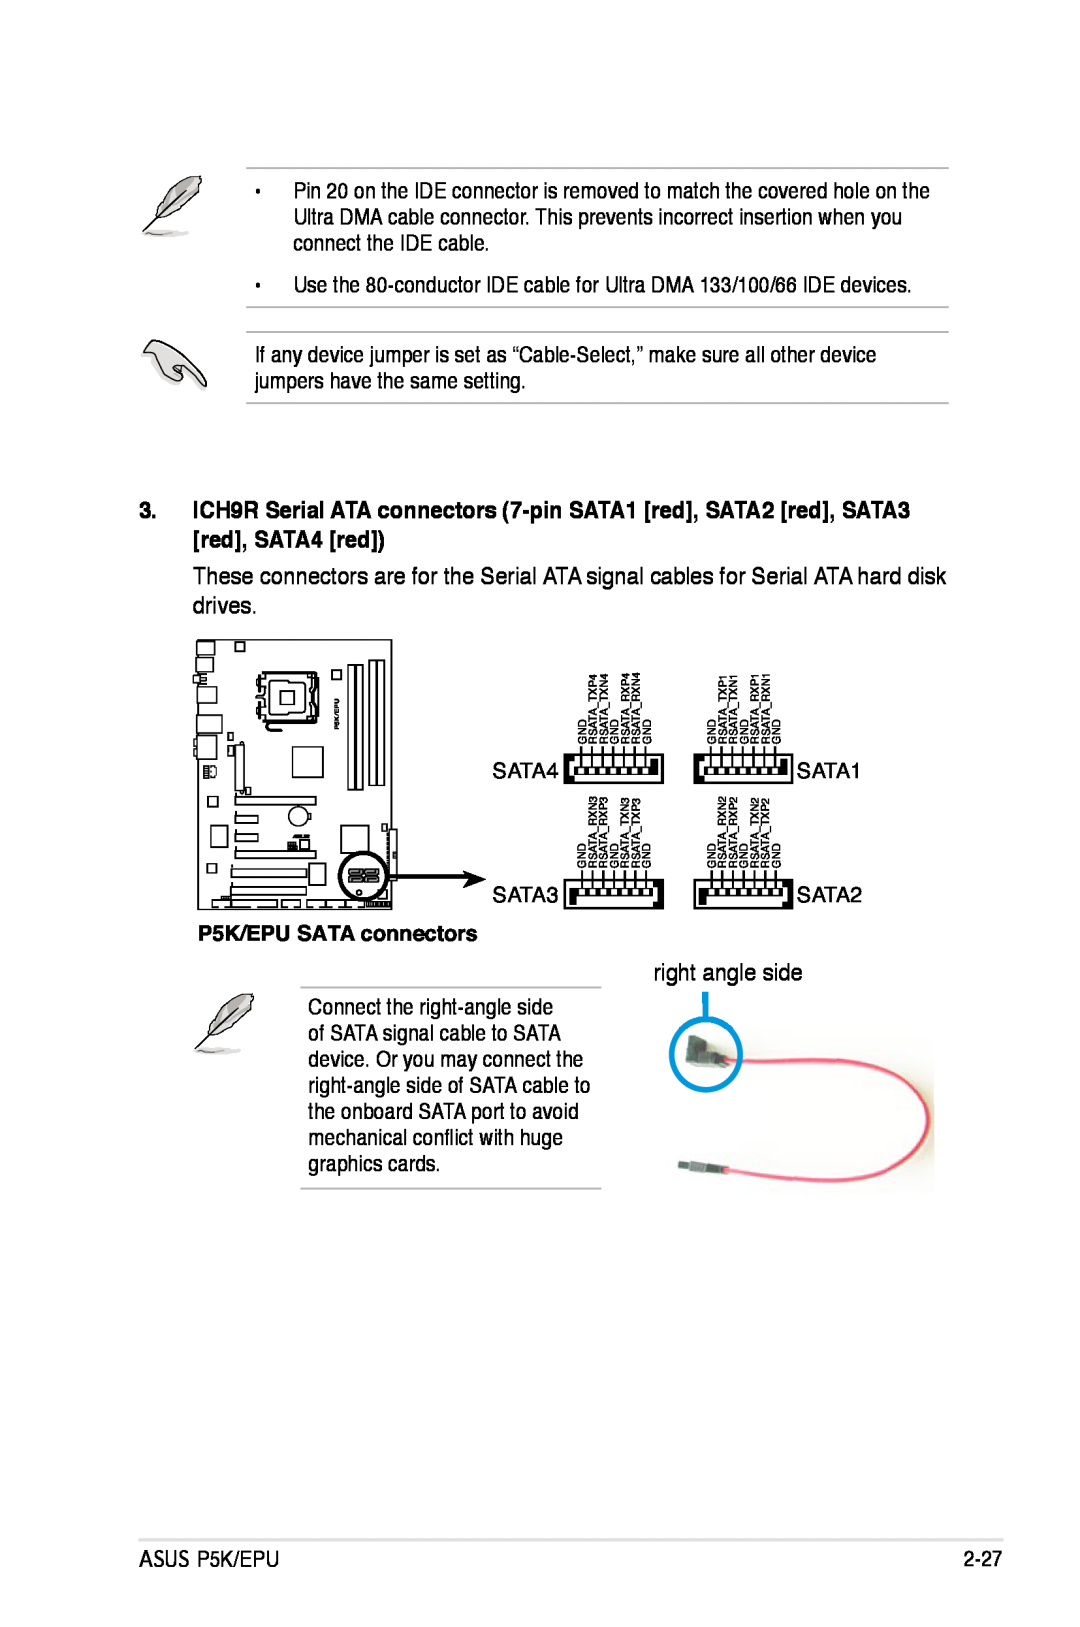 Asus manual right angle side, P5K/EPU SATA connectors 